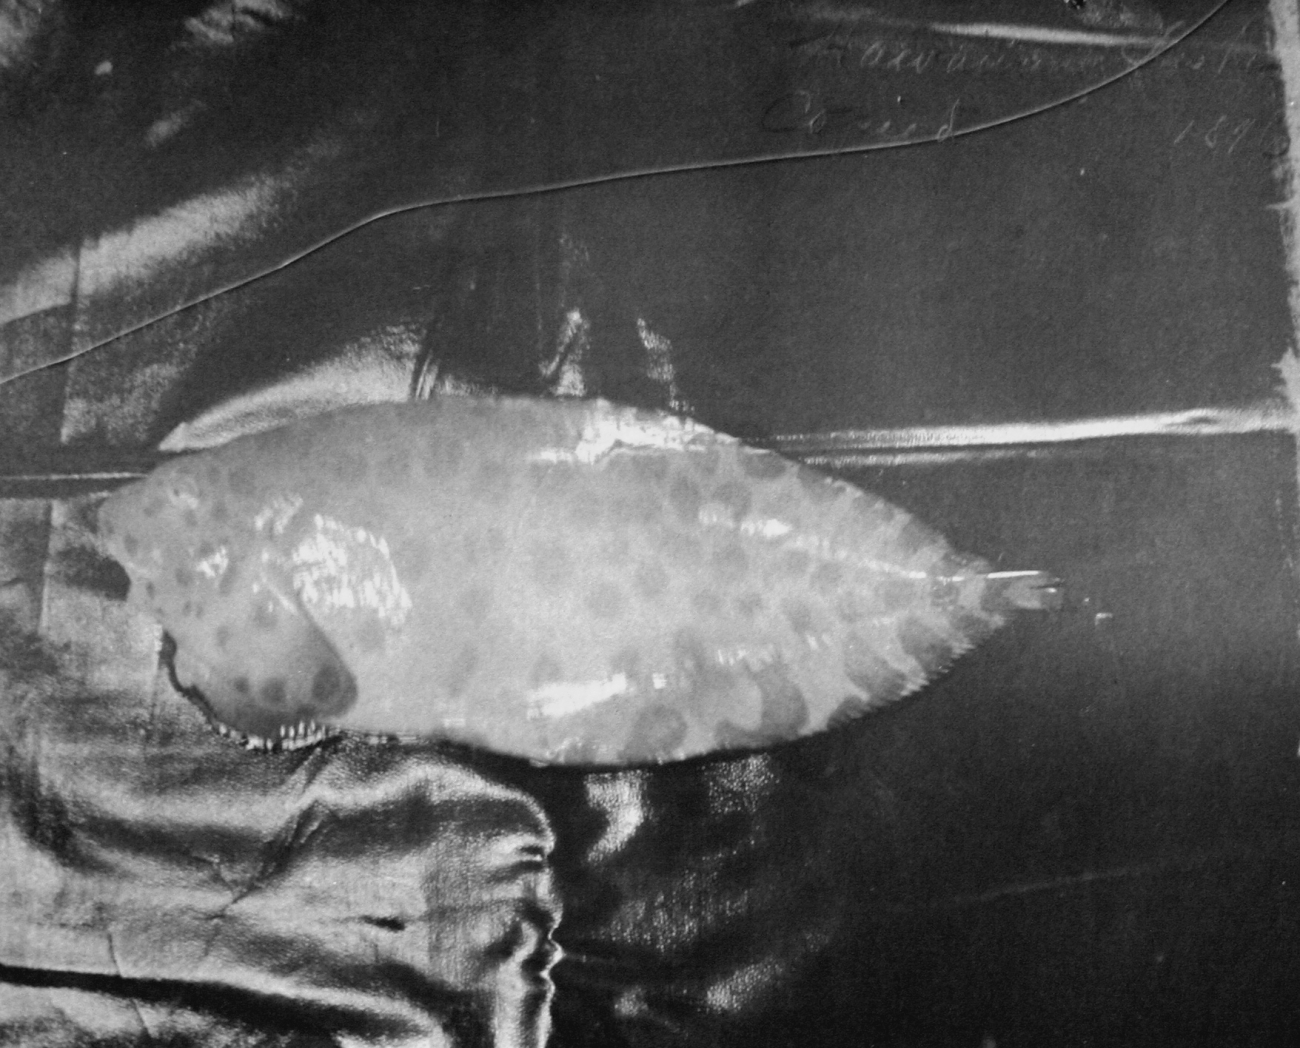 Hawaiian fishes, 1896, unidentified